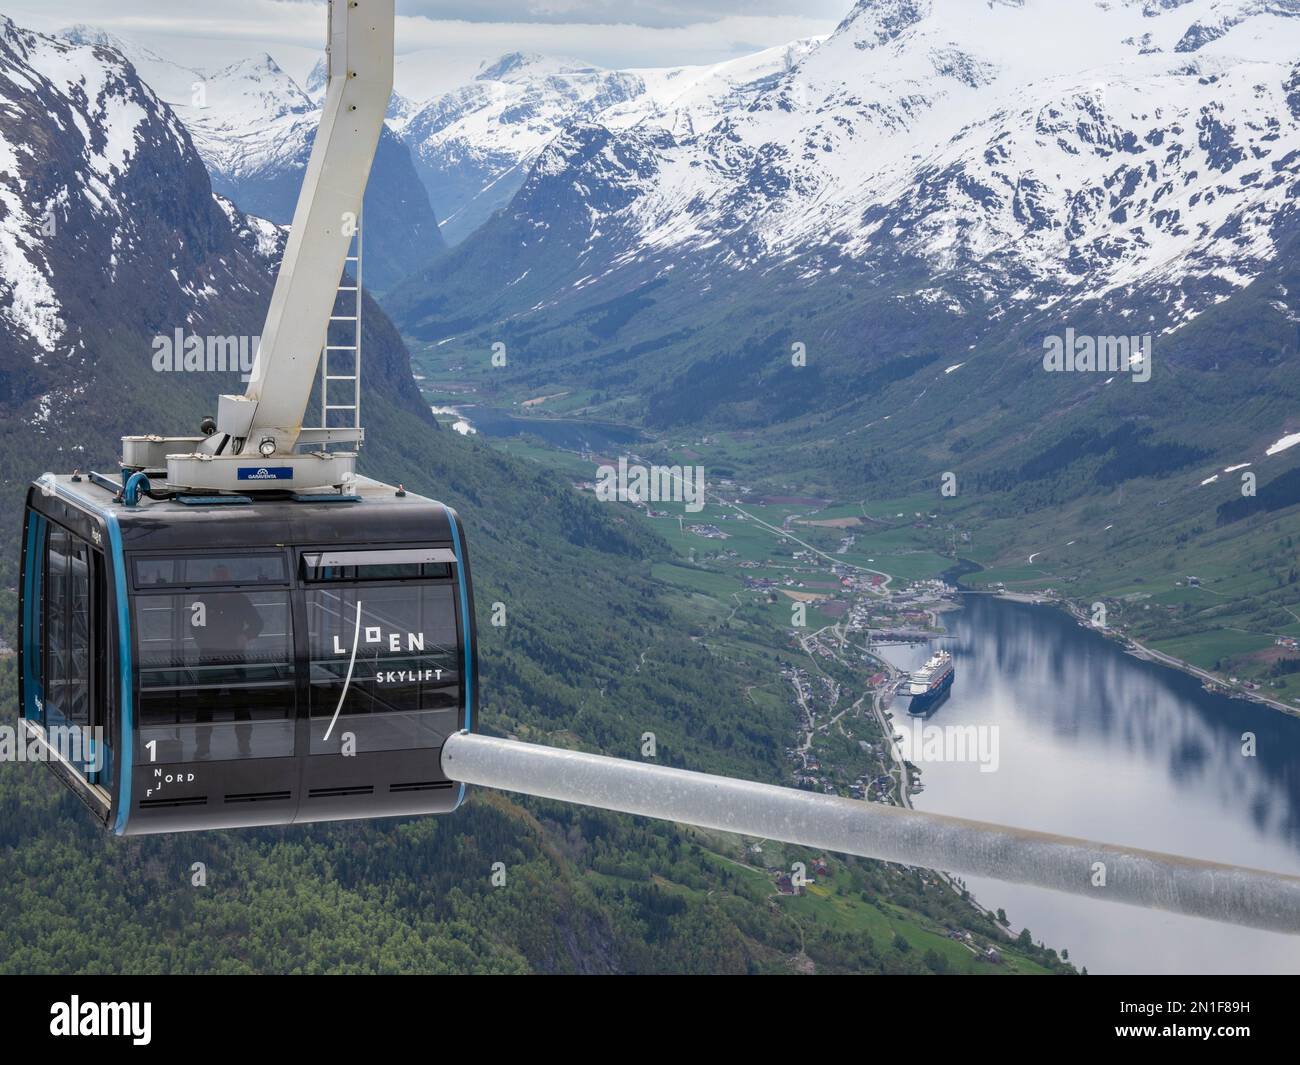 Una vista della funivia Loen Skylift dal Monte Hoven sopra Nordfjord a Stryn, Vestland, Norvegia, Scandinavia, Europa Foto Stock